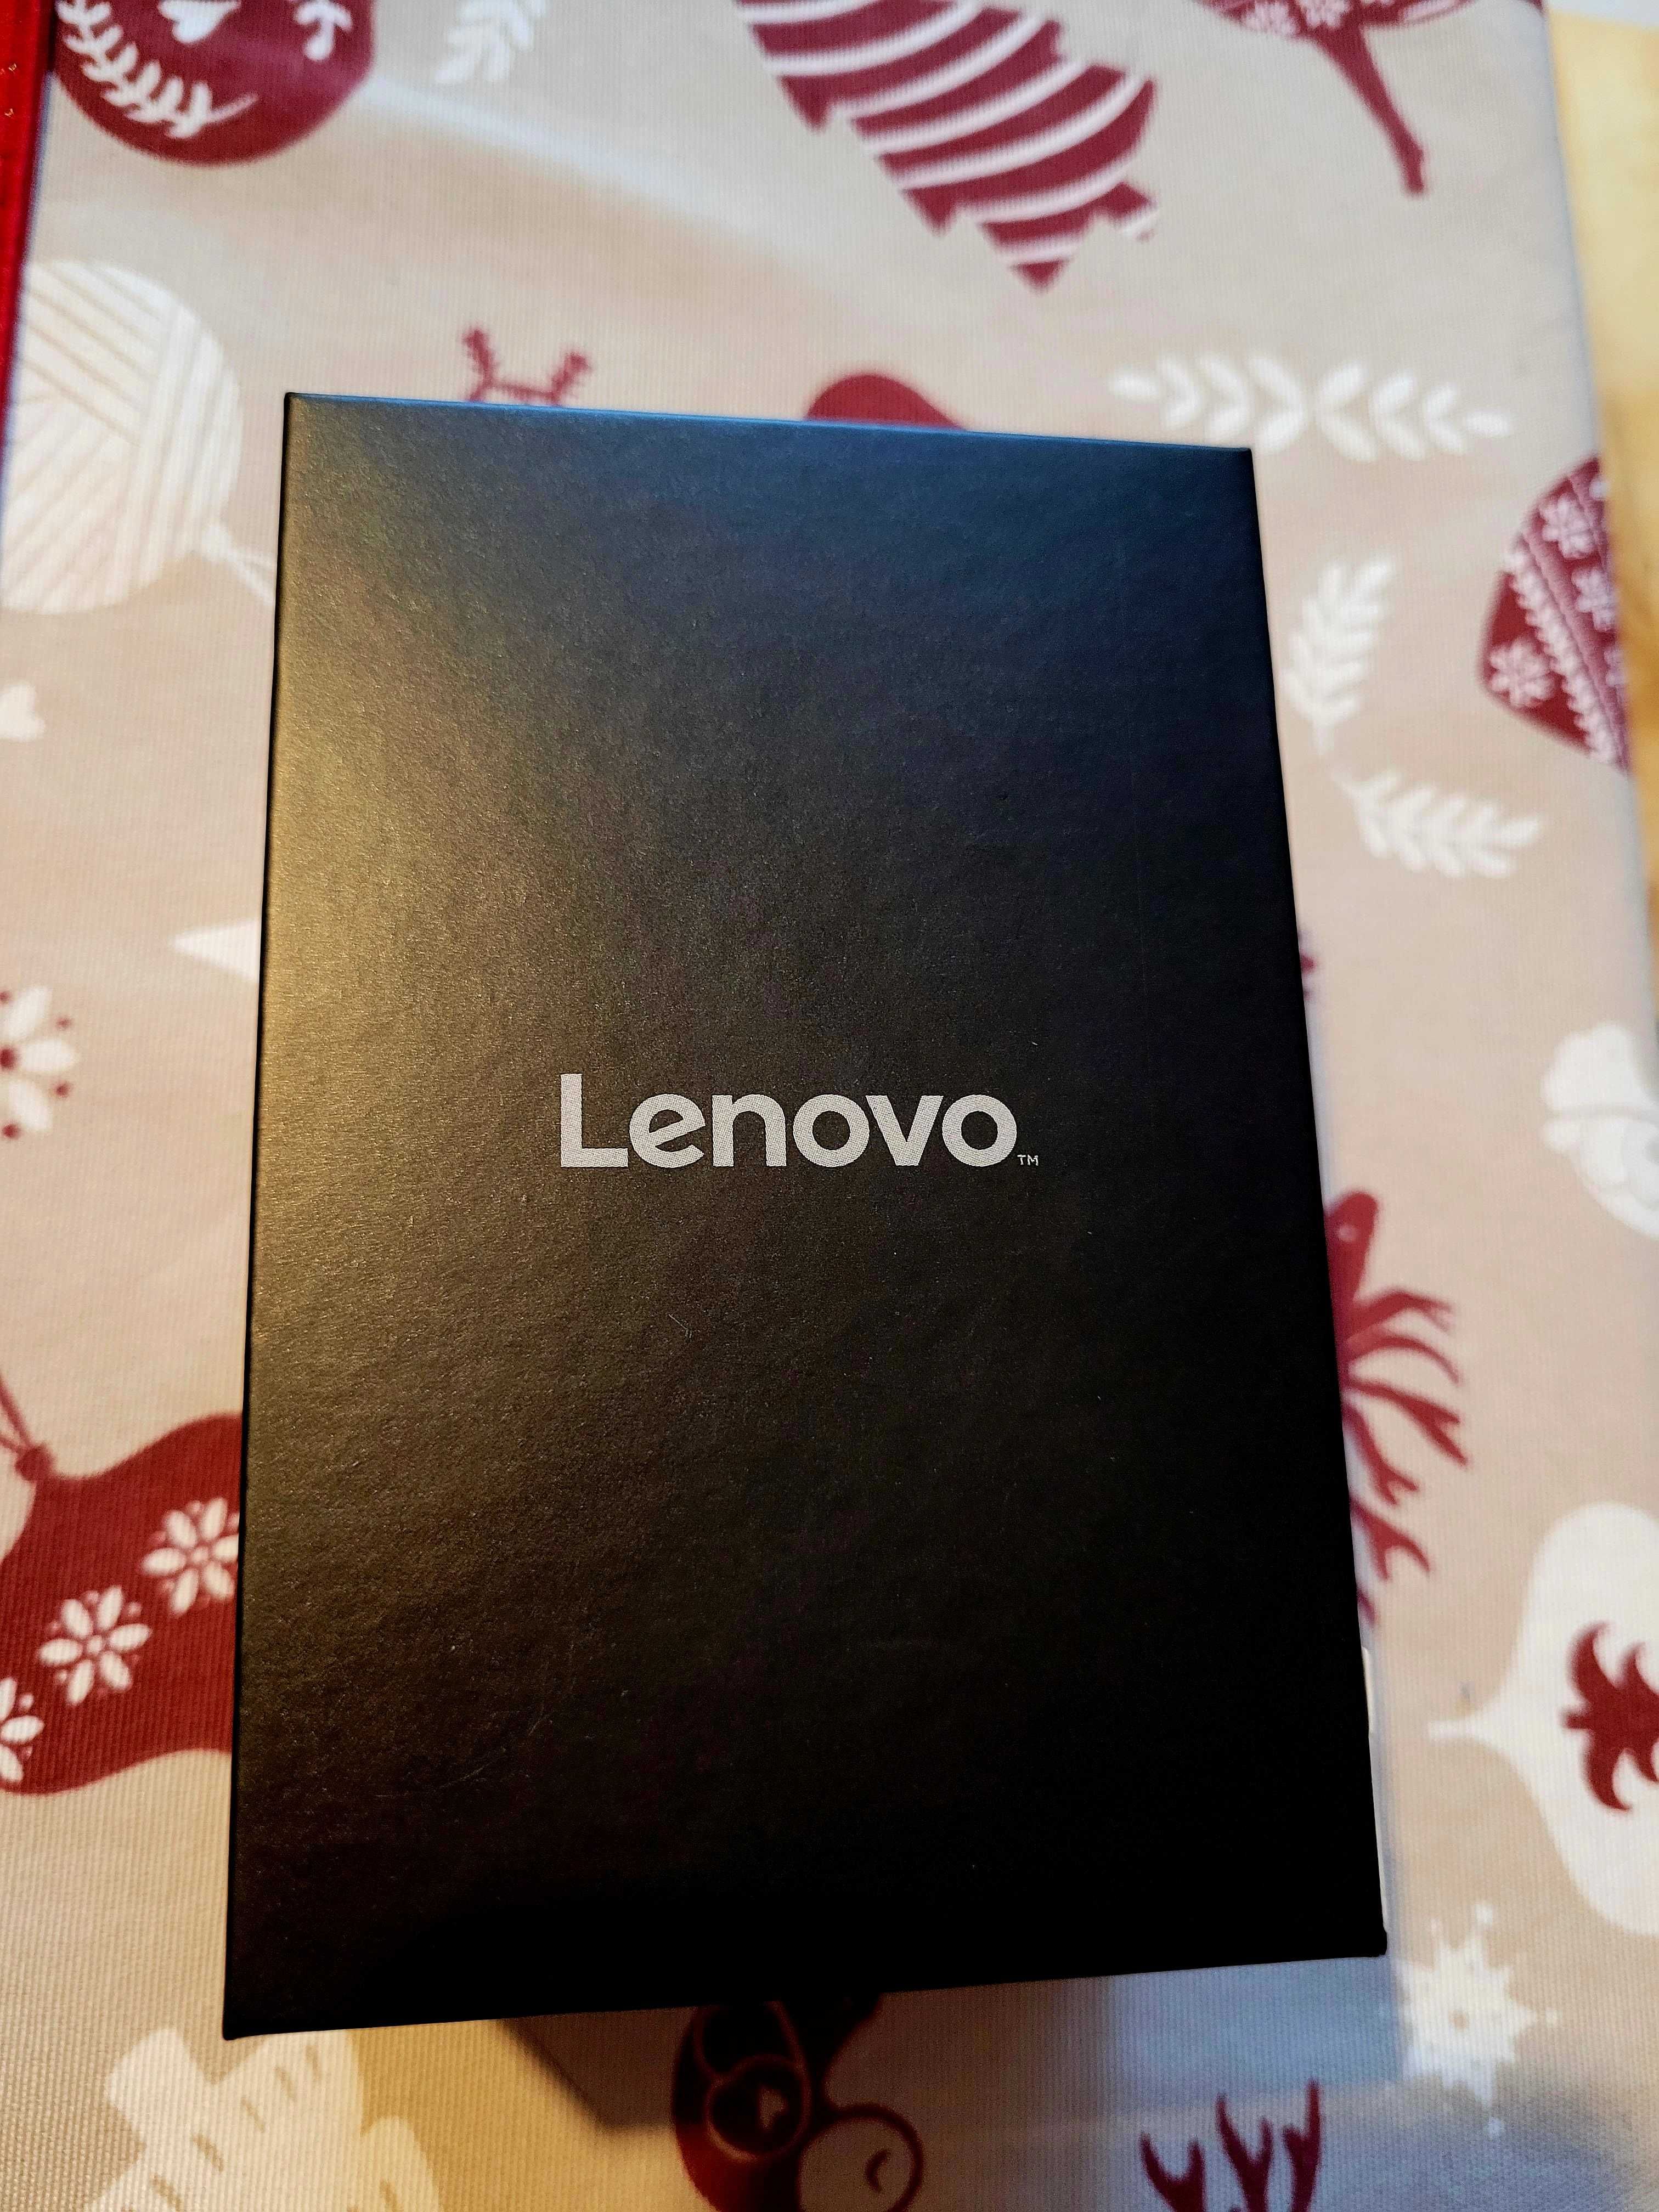 Lenovo Carme 2 (różowy) Smartwatch ^^ NOWY